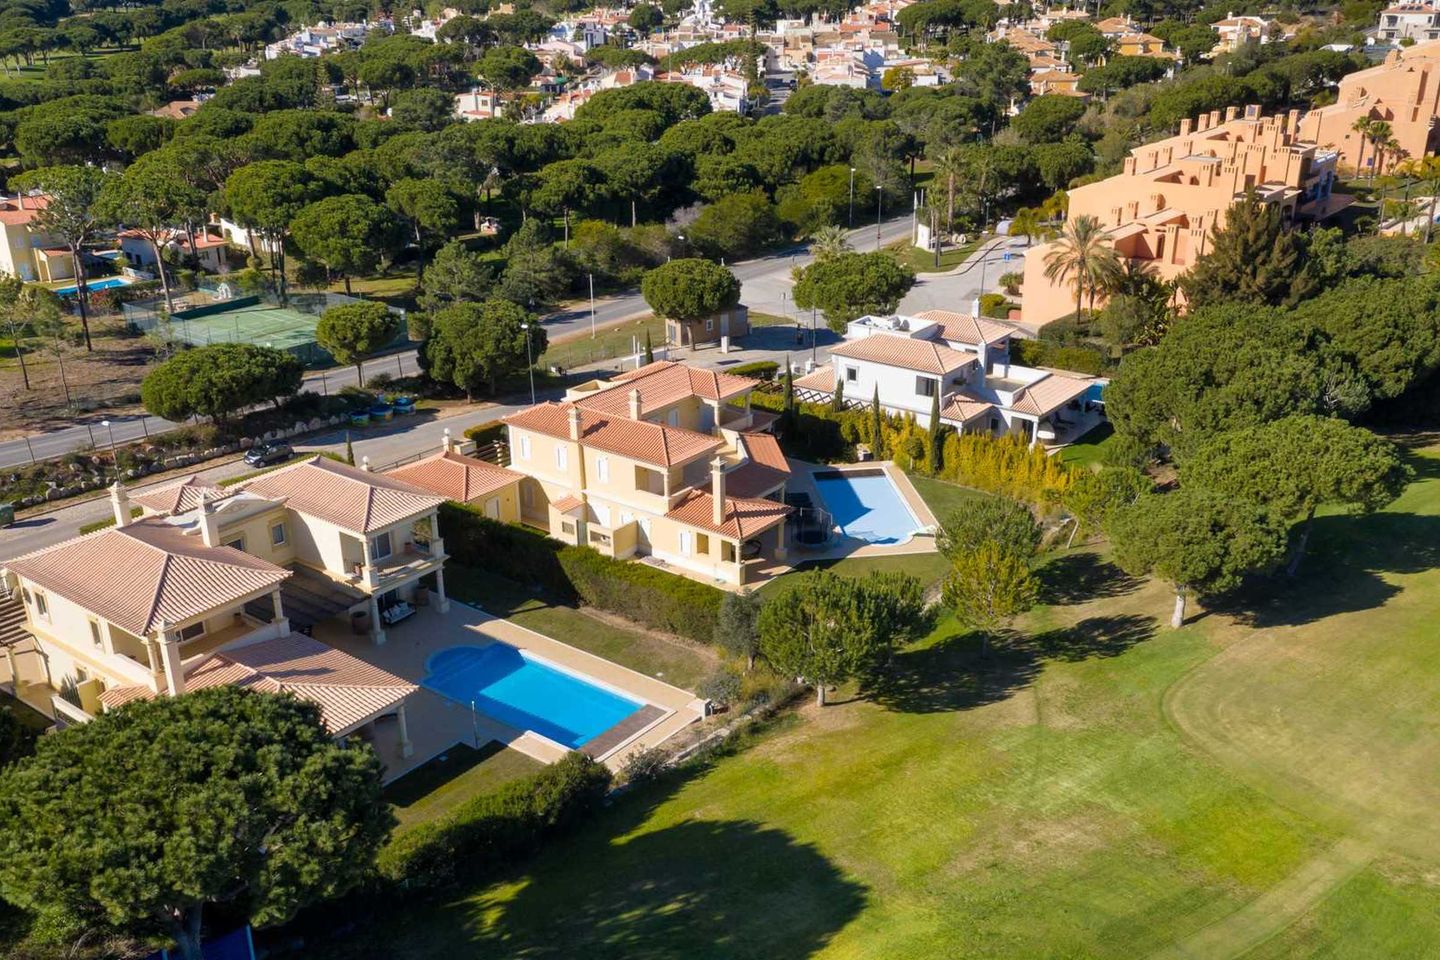 Villa in Vilamoura, Central Algarve,Portugal, Vilamoura, Portugal